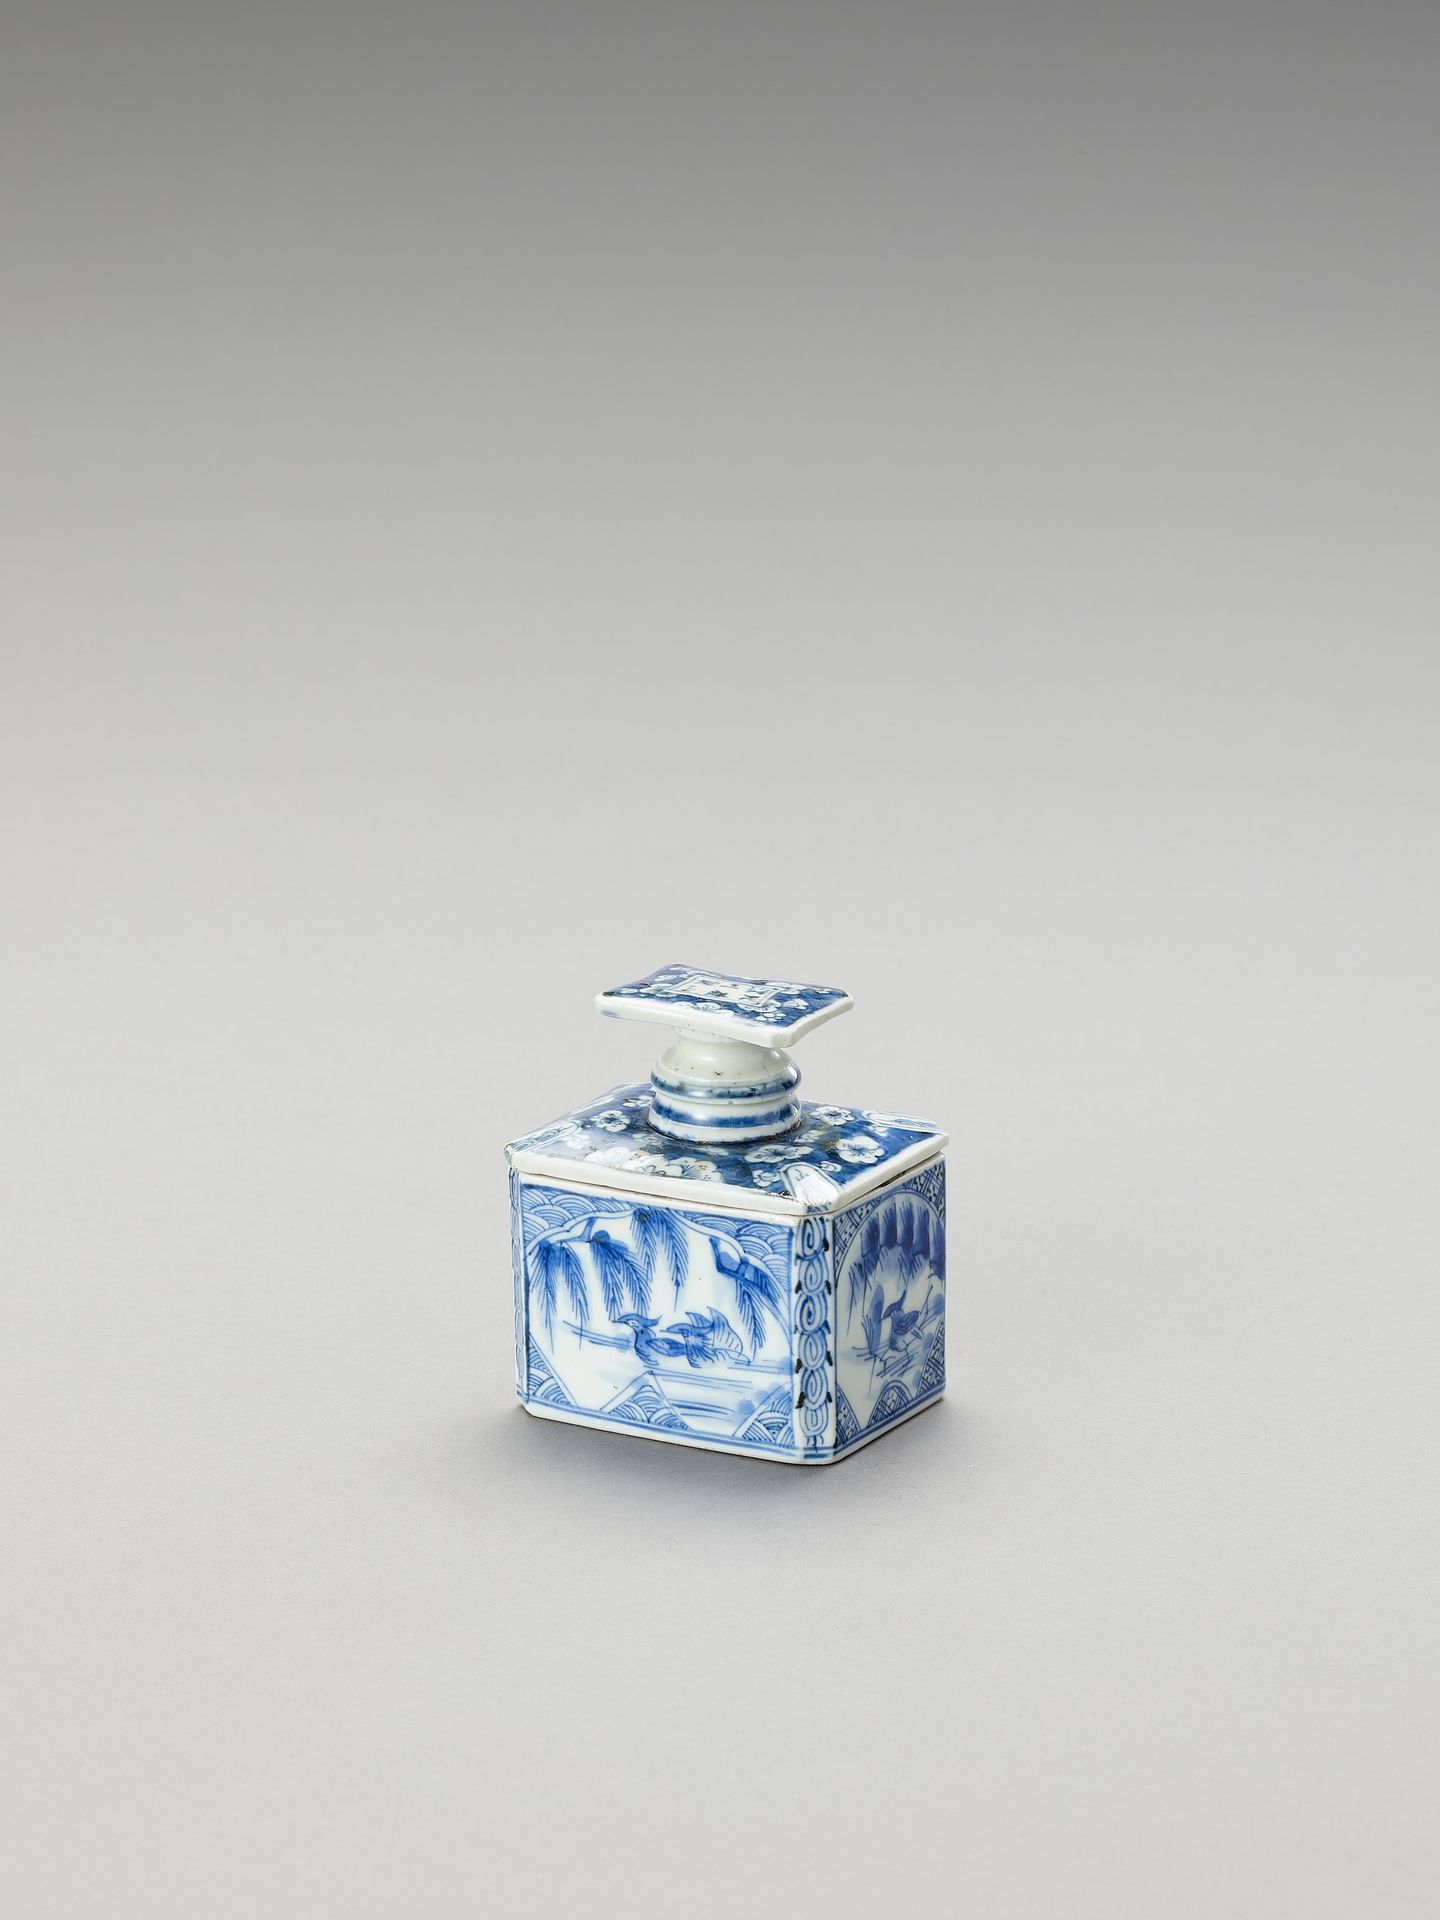 A BLUE AND WHITE FUKAGAWA PORCELAIN TEA CADDY AND COVER 蓝白福川瓷茶壶及盖
日本，江户时代（1615-1&hellip;